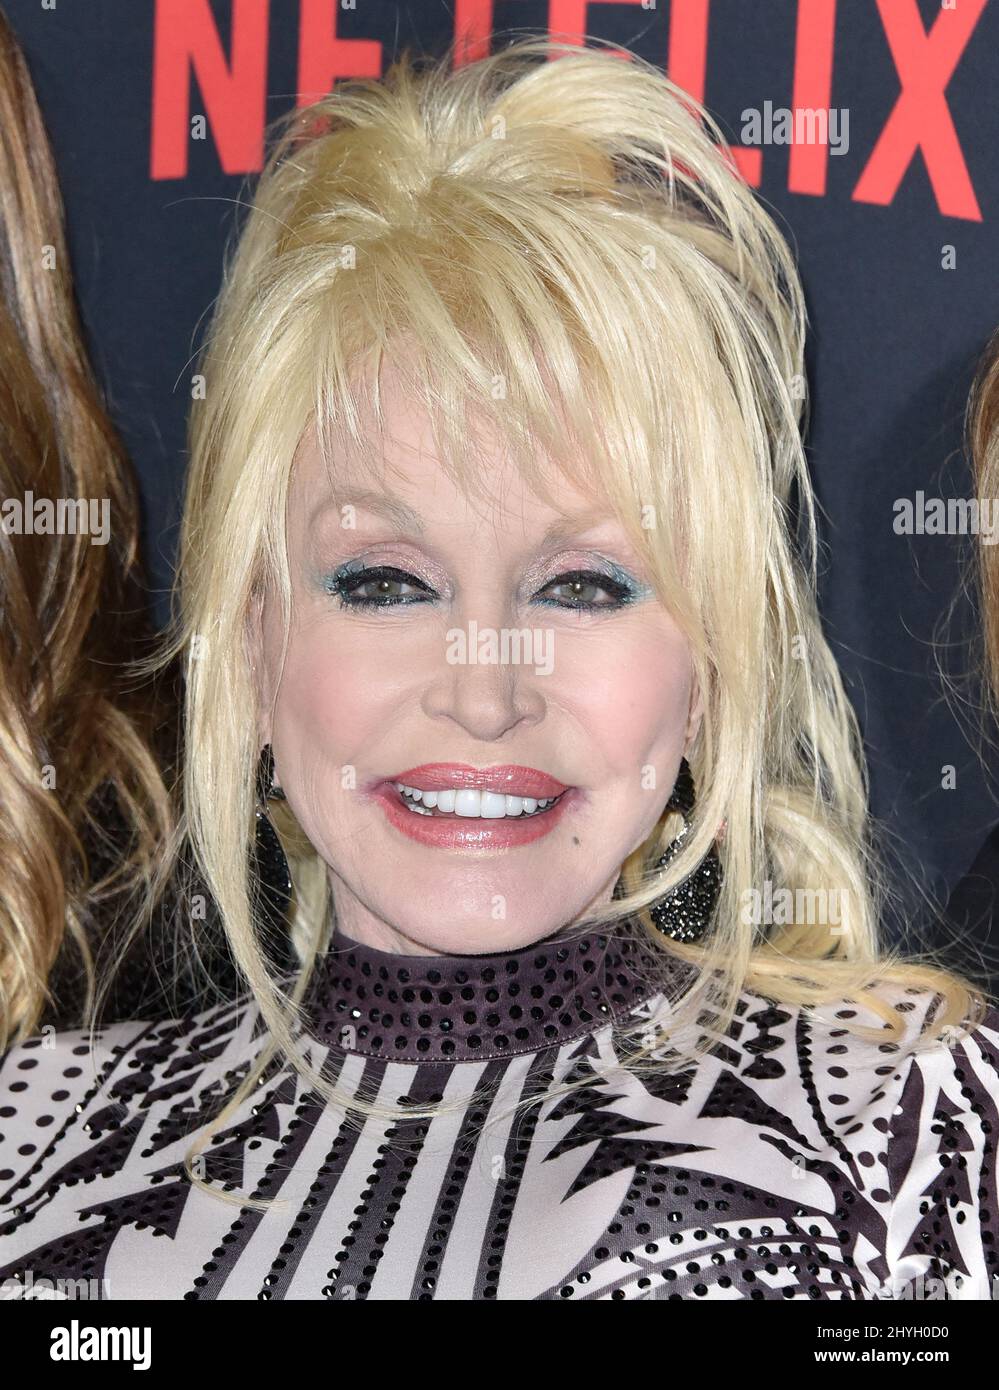 Dolly Parton nahm an der Weltpremiere VON DUMPLIN Teil, die in den TCL Chinese 6 Theatres in Los Angeles, Kalifornien, stattfand Stockfoto